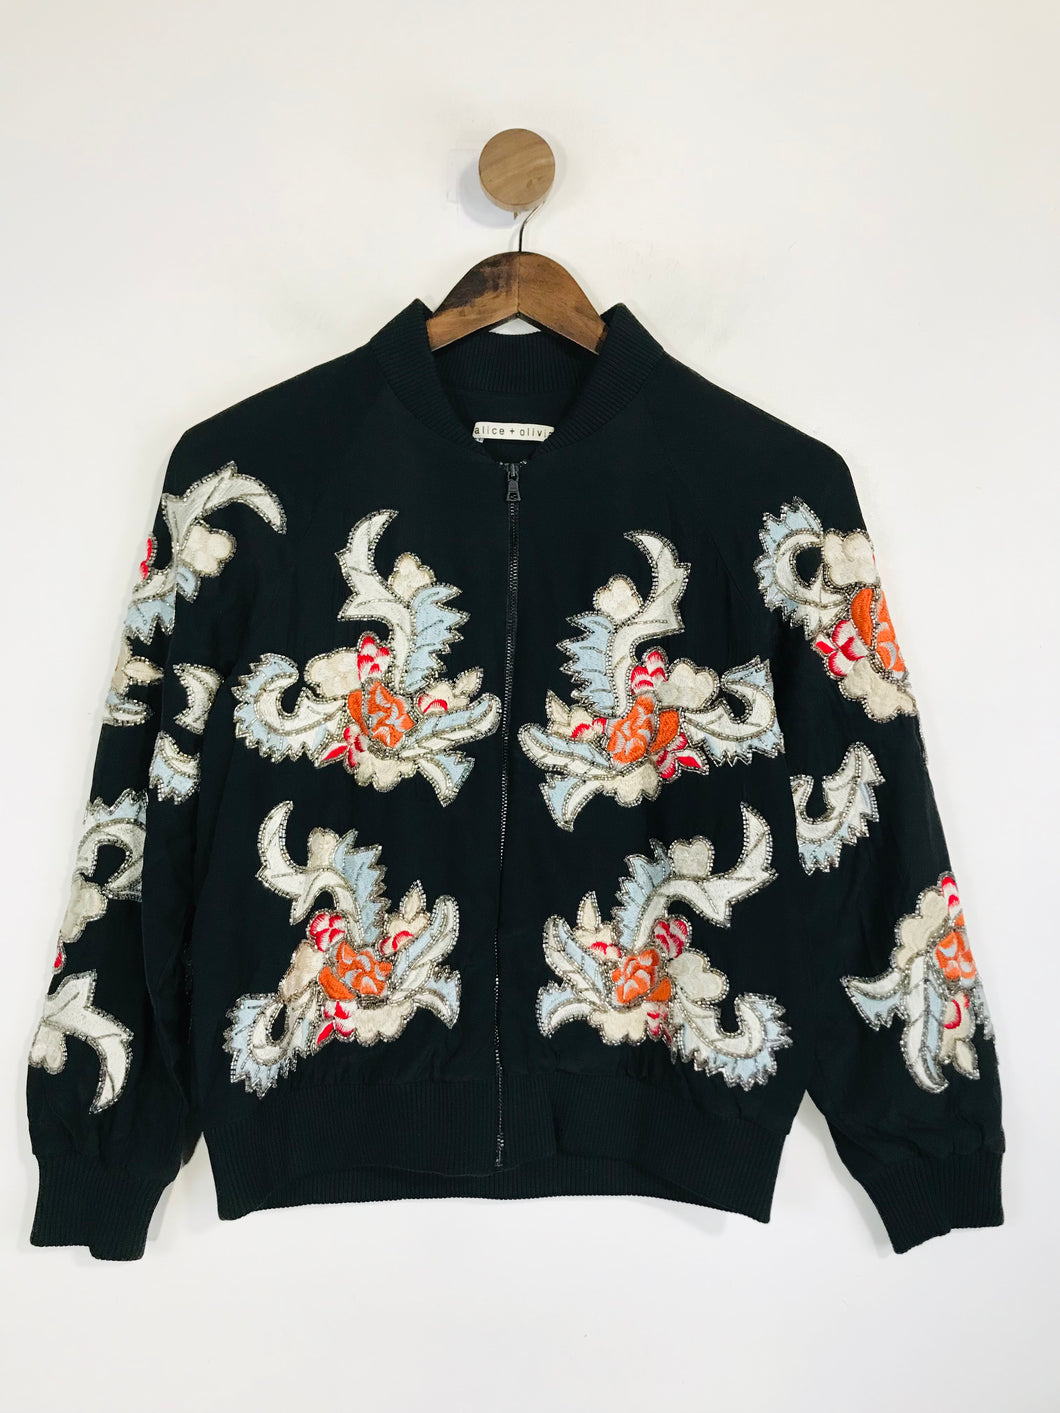 Alice + Olivia Women's Silk Embroidered Bomber Jacket | XS UK6-8 | Black